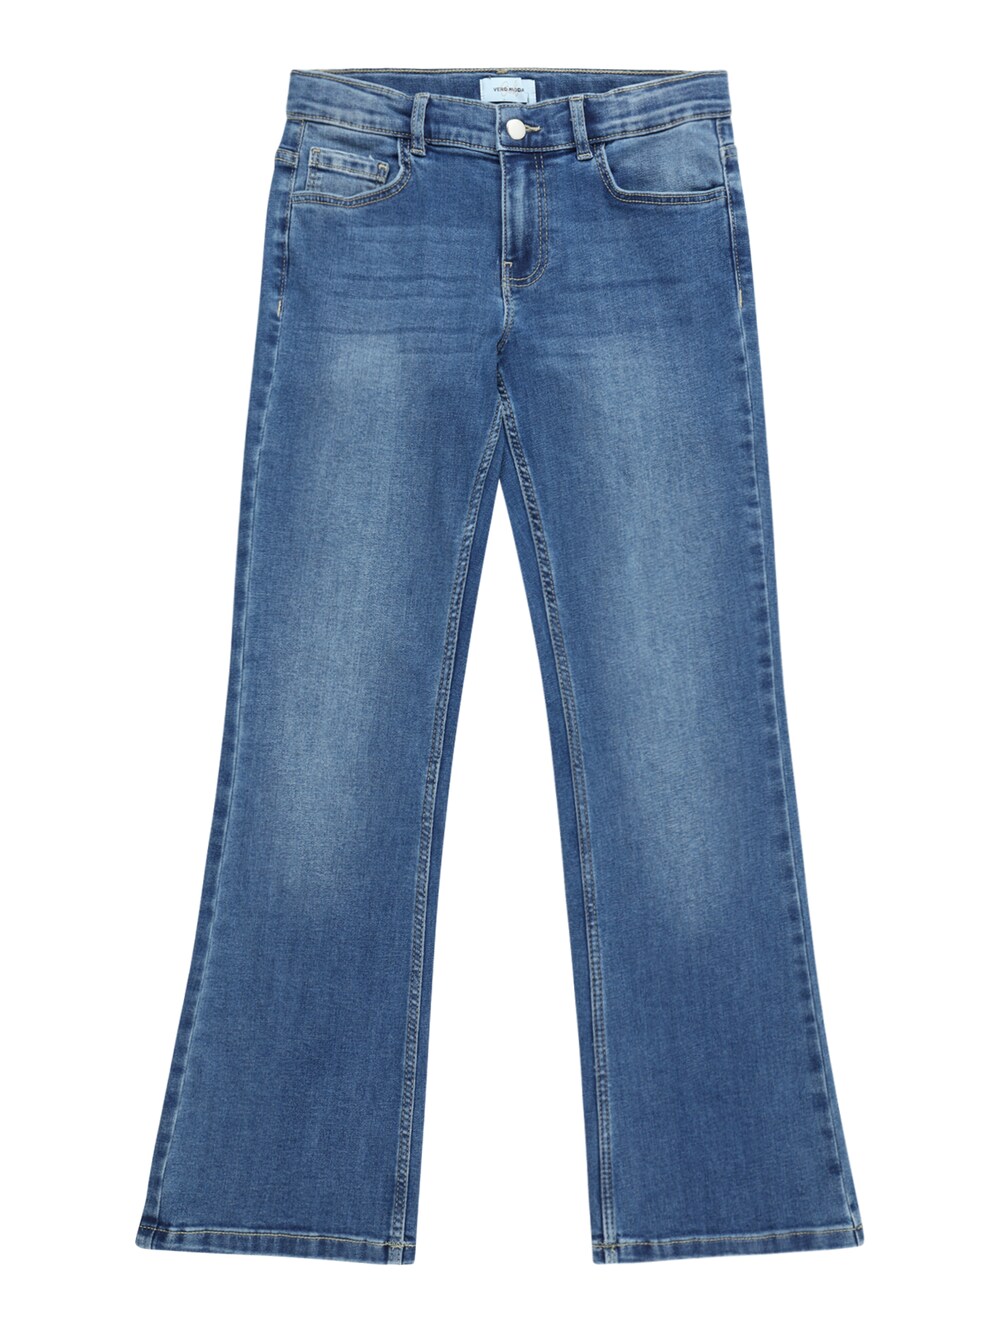 Широкие джинсы Vero Moda Girl River, синий софия джинсы vero moda синий